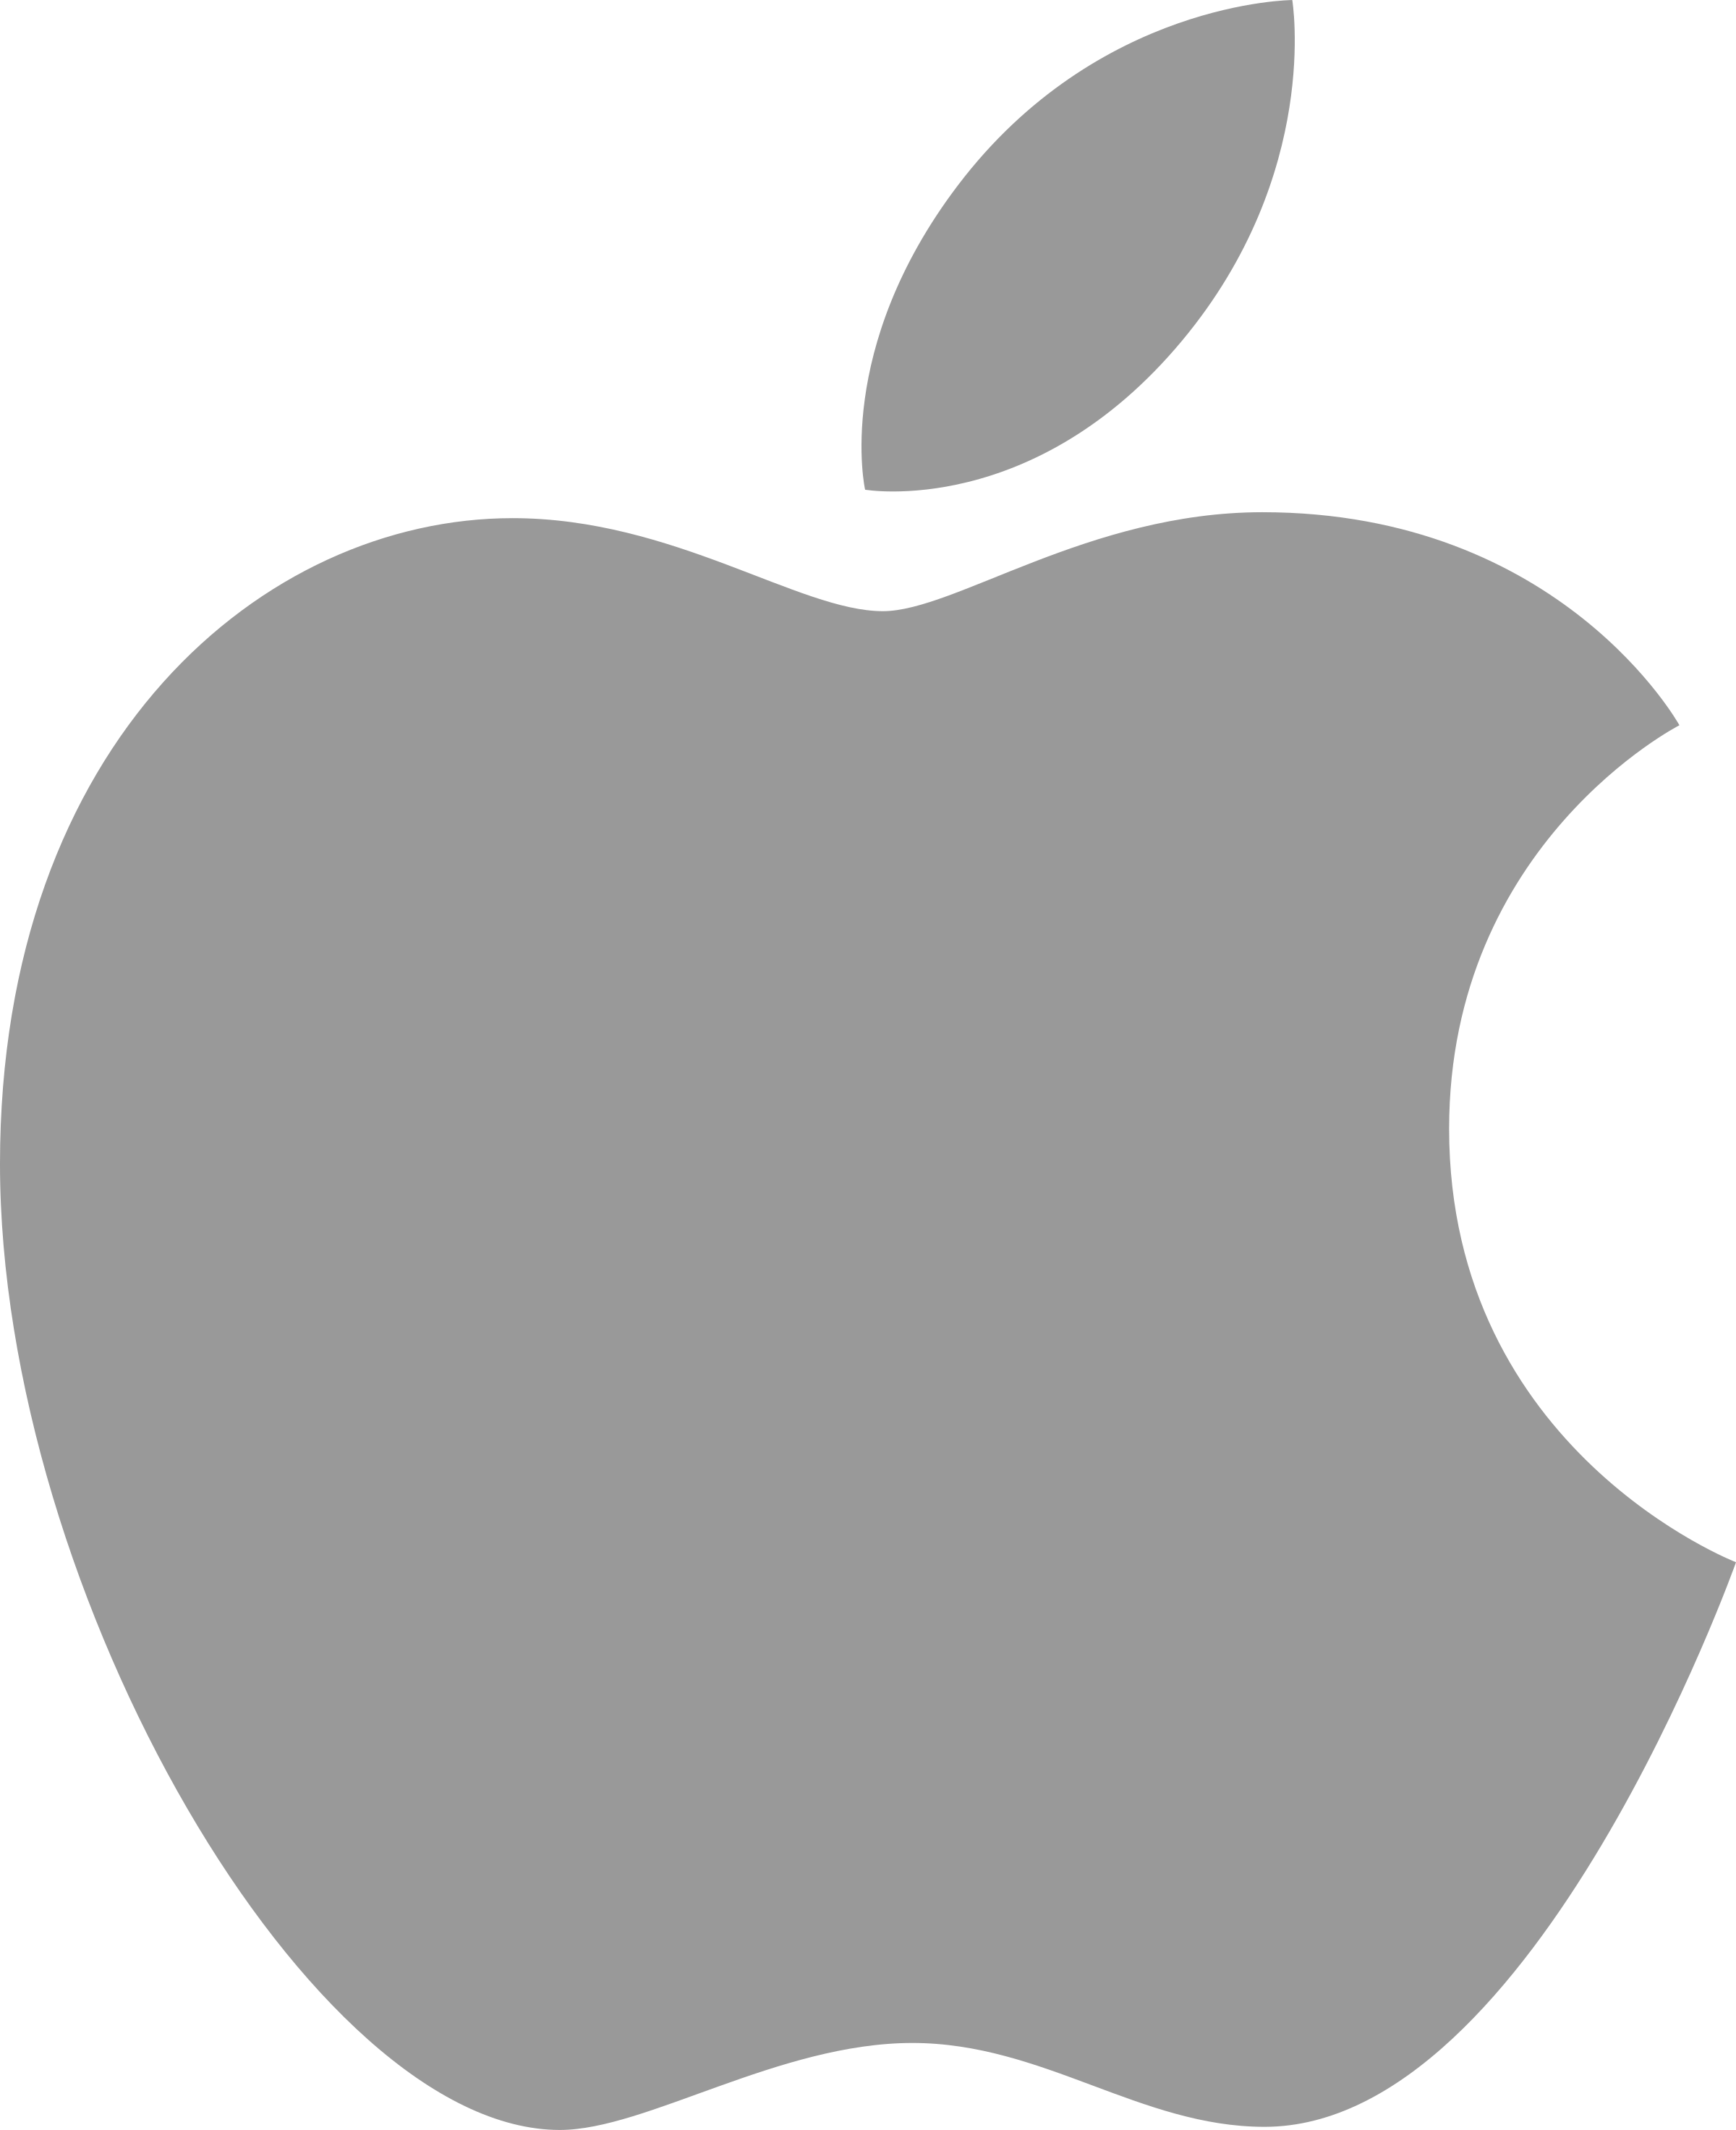 Apple Logo Png Apple Logo Png Transparent Pngpix Apple Logo Images